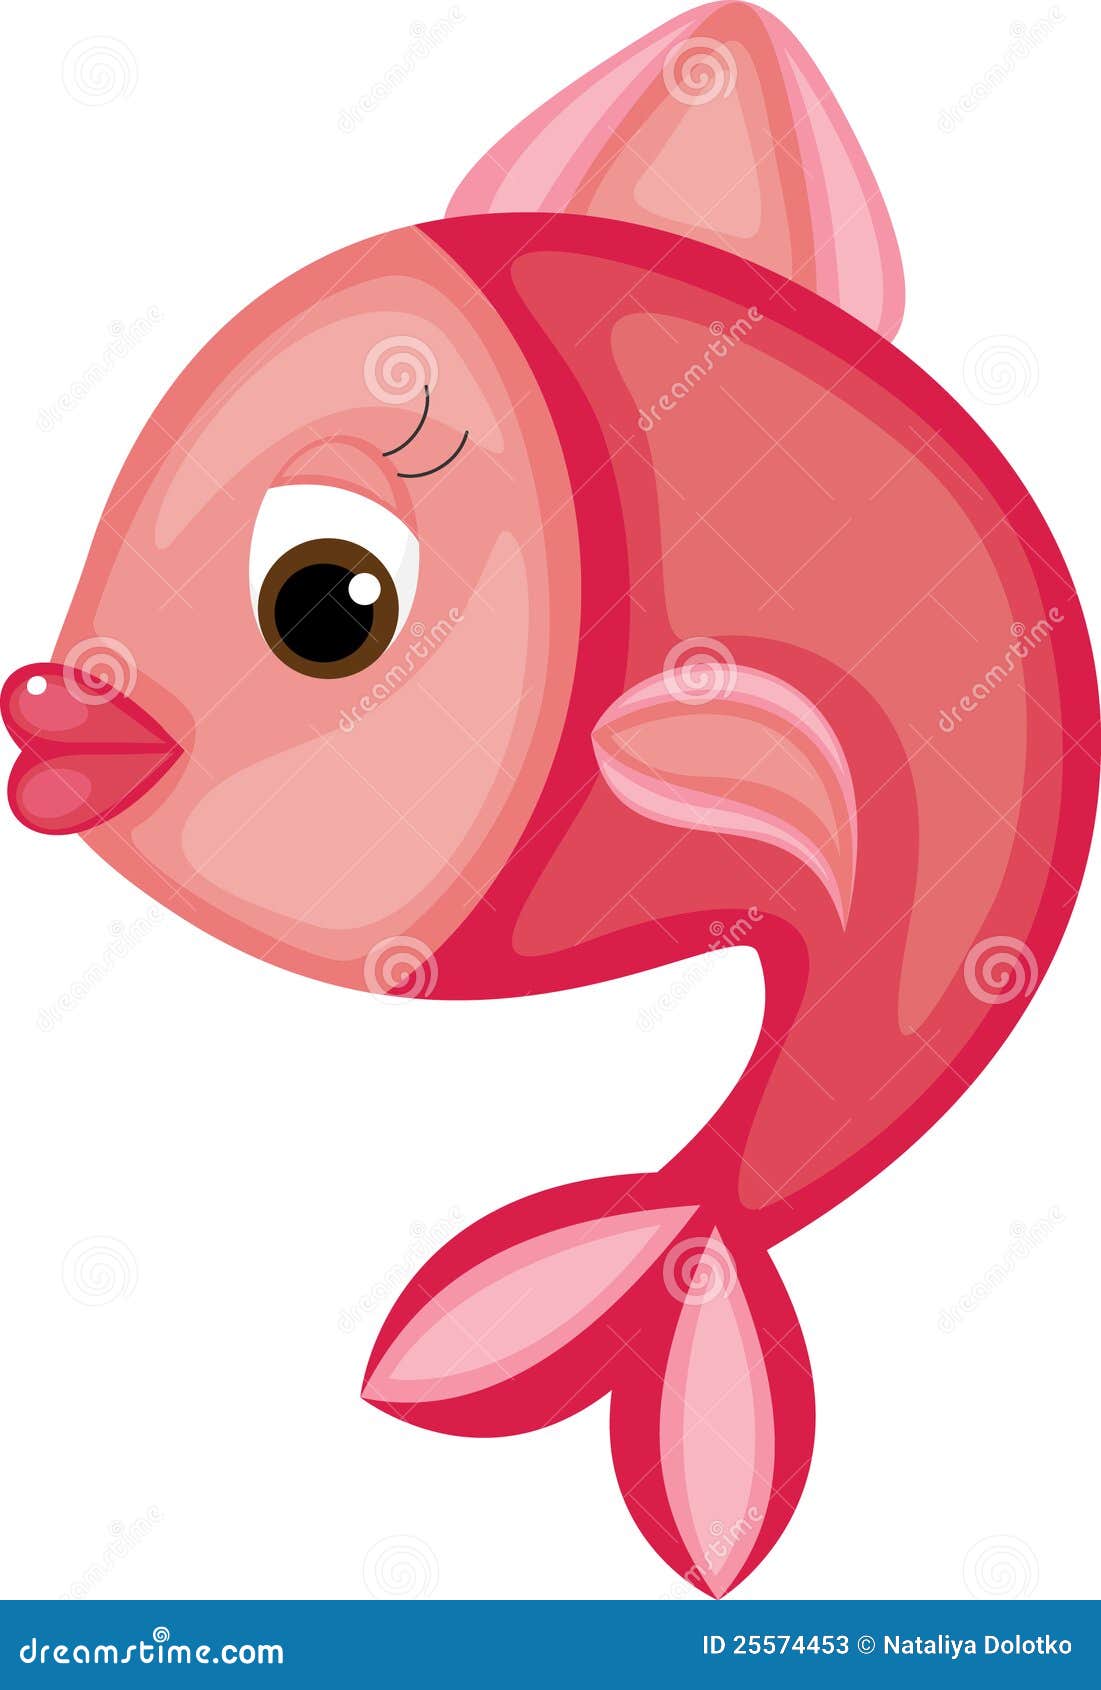 Bright cartoon fish stock vector. Illustration of cartoon - 25574453